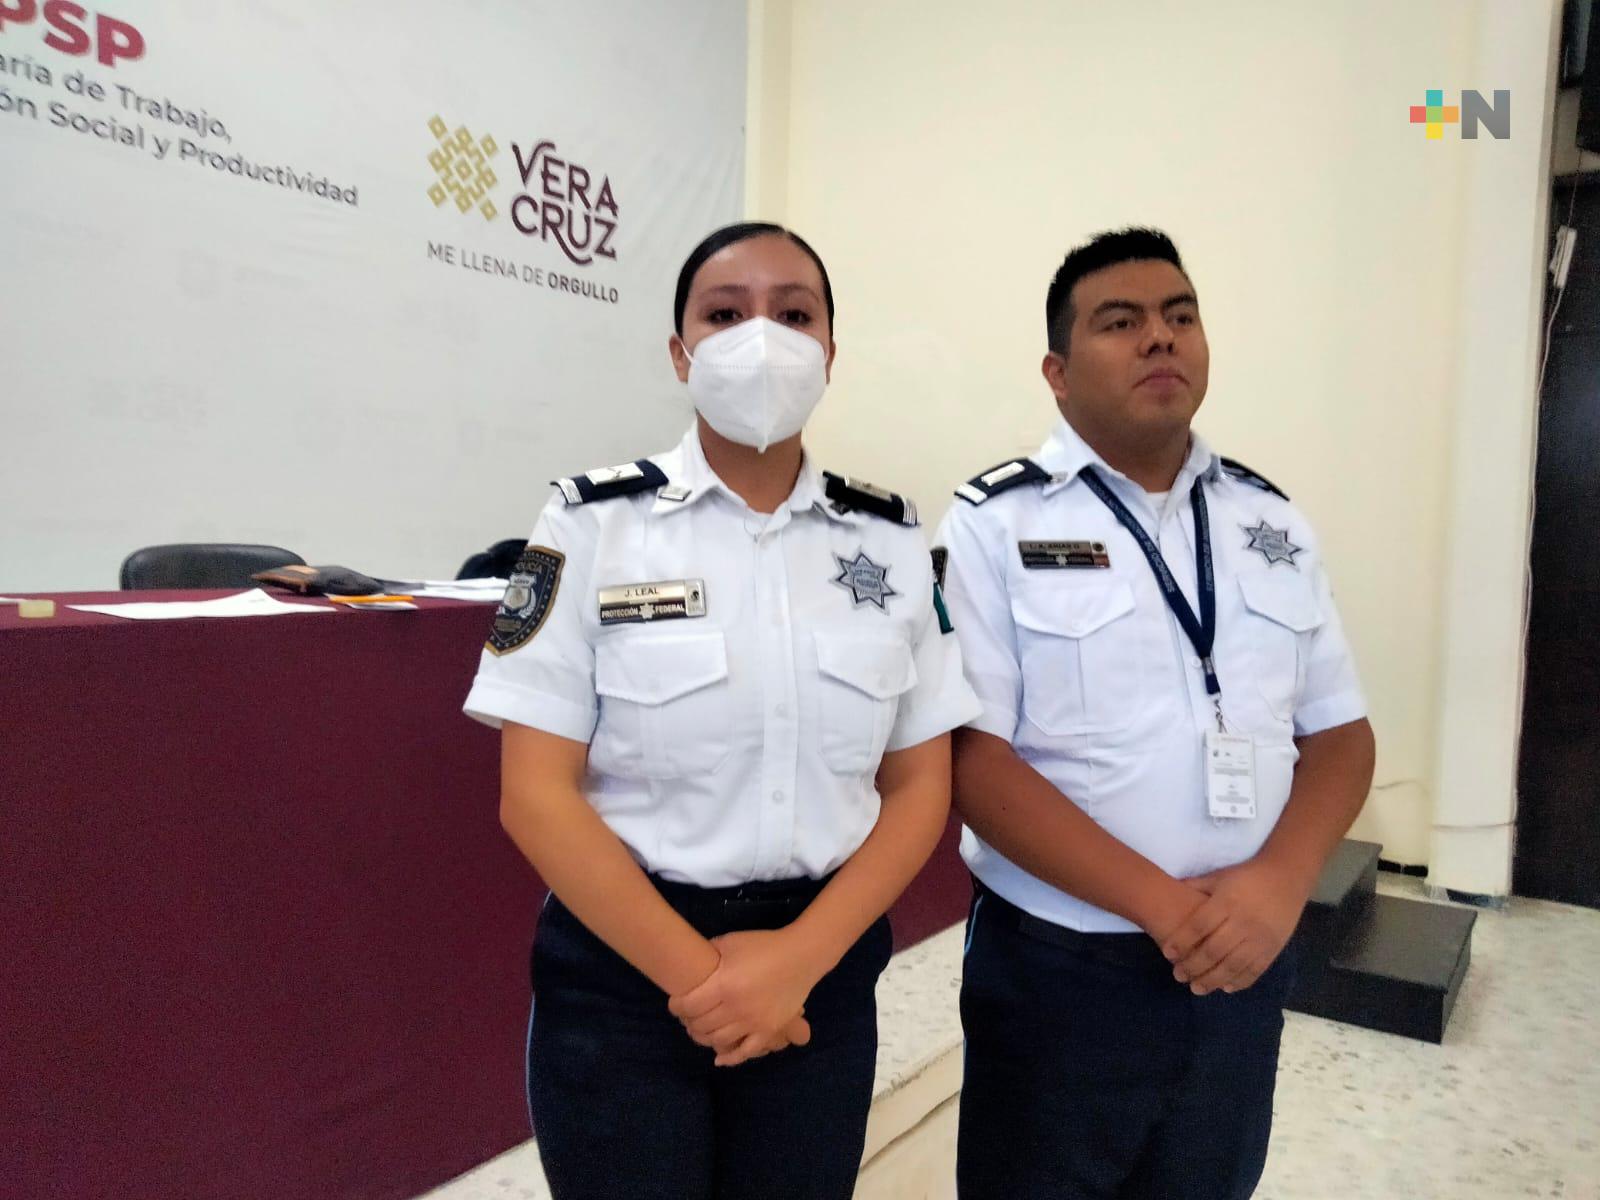 Servicio de Protección Federal ofrece vacantes de empleo a la población de Xalapa y zona sur de Veracruz